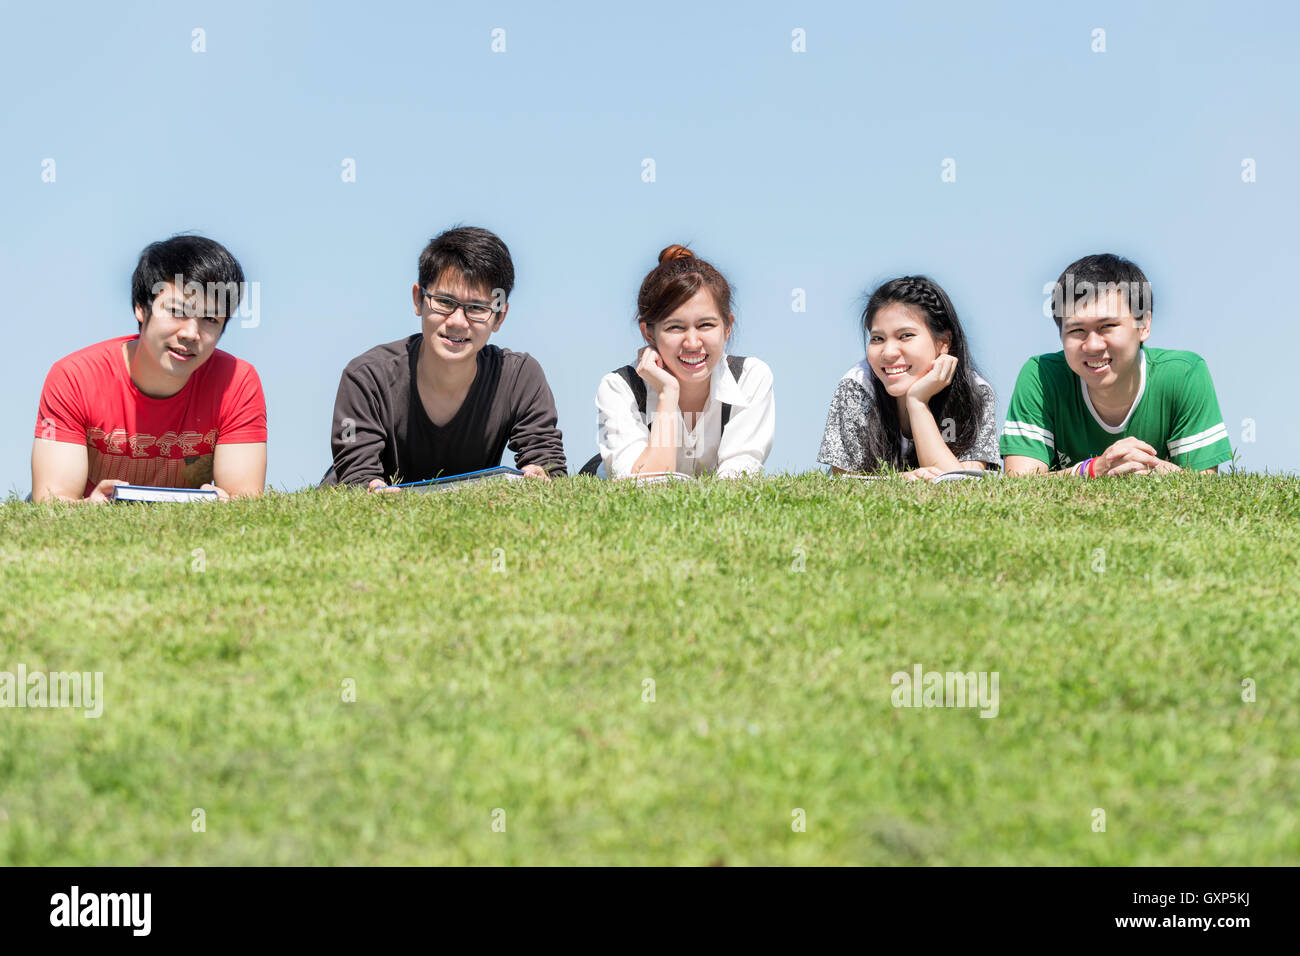 Grupo de amigos que estudian en la escuela al aire libre en el parque.Cinco asiáticas estudiante de la high school secundaria acostado en el pasto en la escuela. Foto de stock